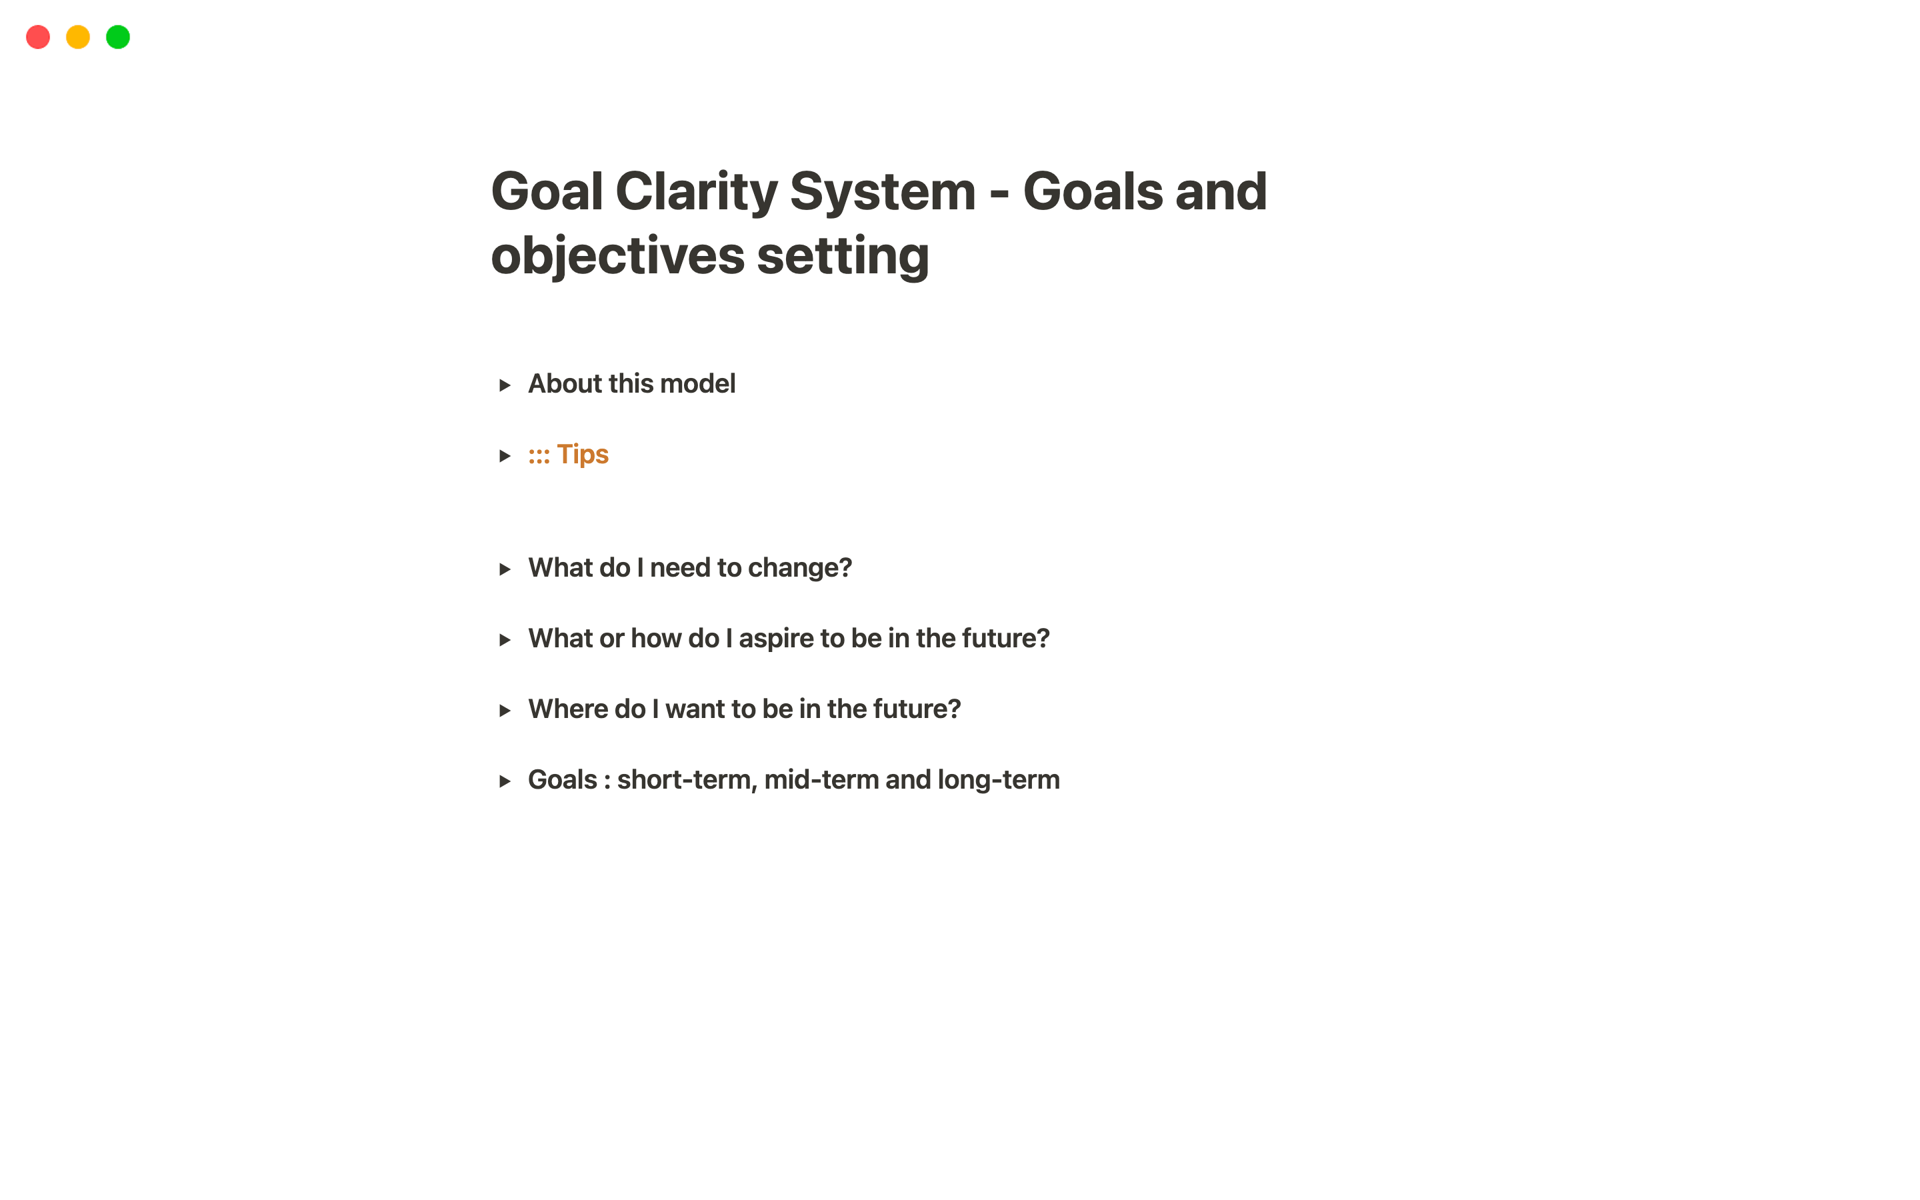 Vista previa de plantilla para Goal Clarity System - Goals and objectives setting